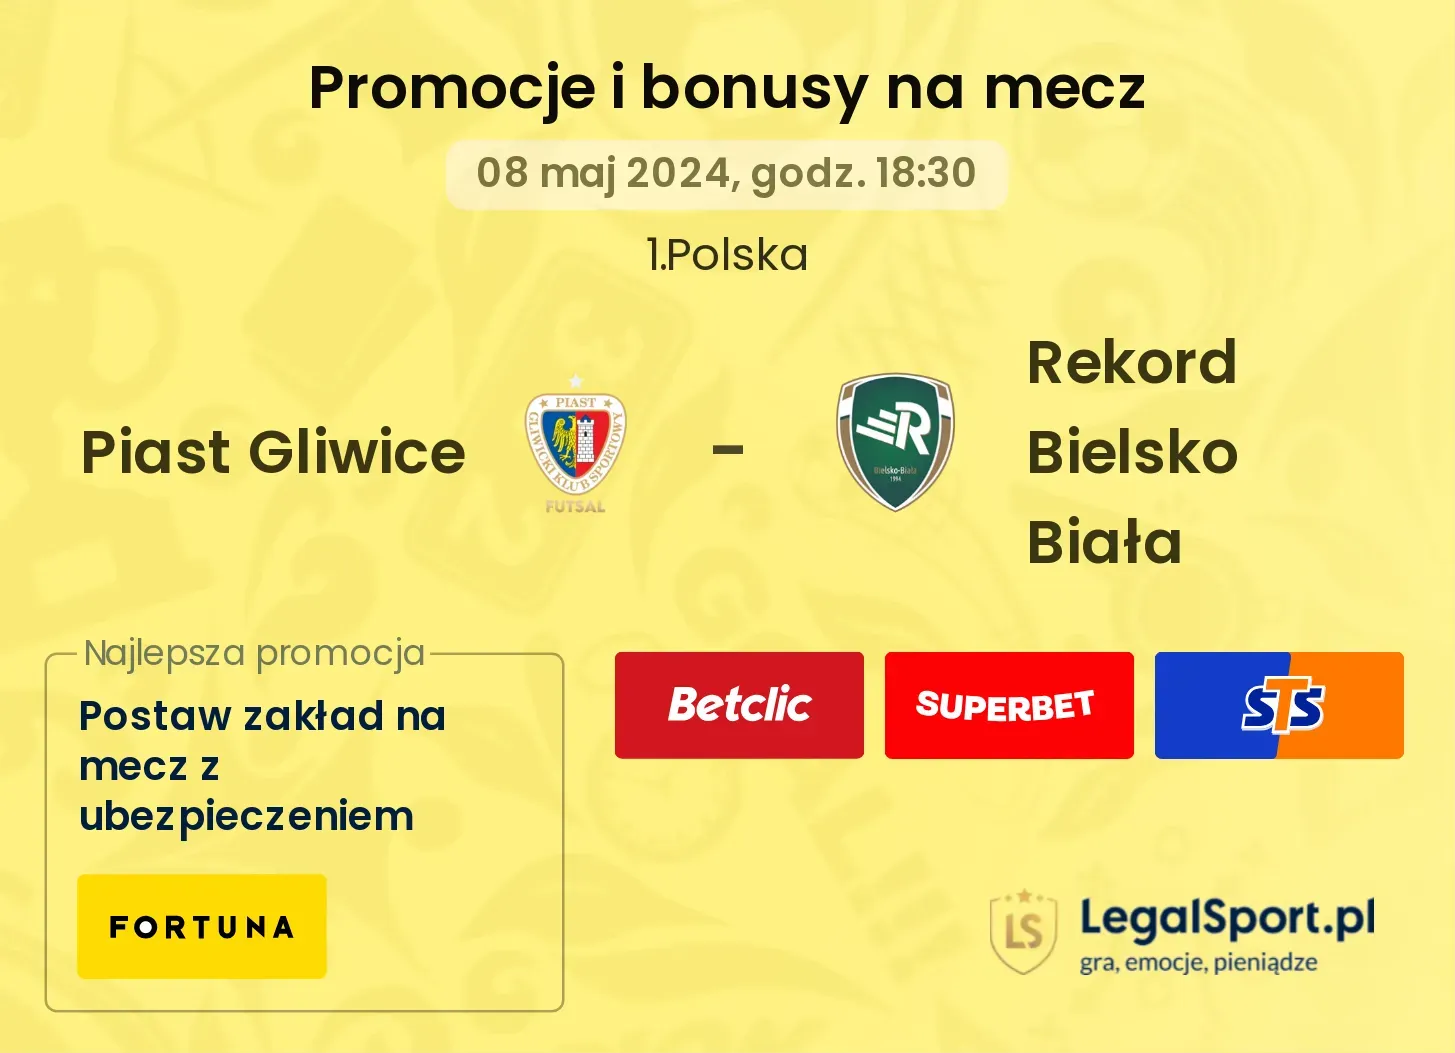 Piast Gliwice - Rekord Bielsko Biała promocje bonusy na mecz